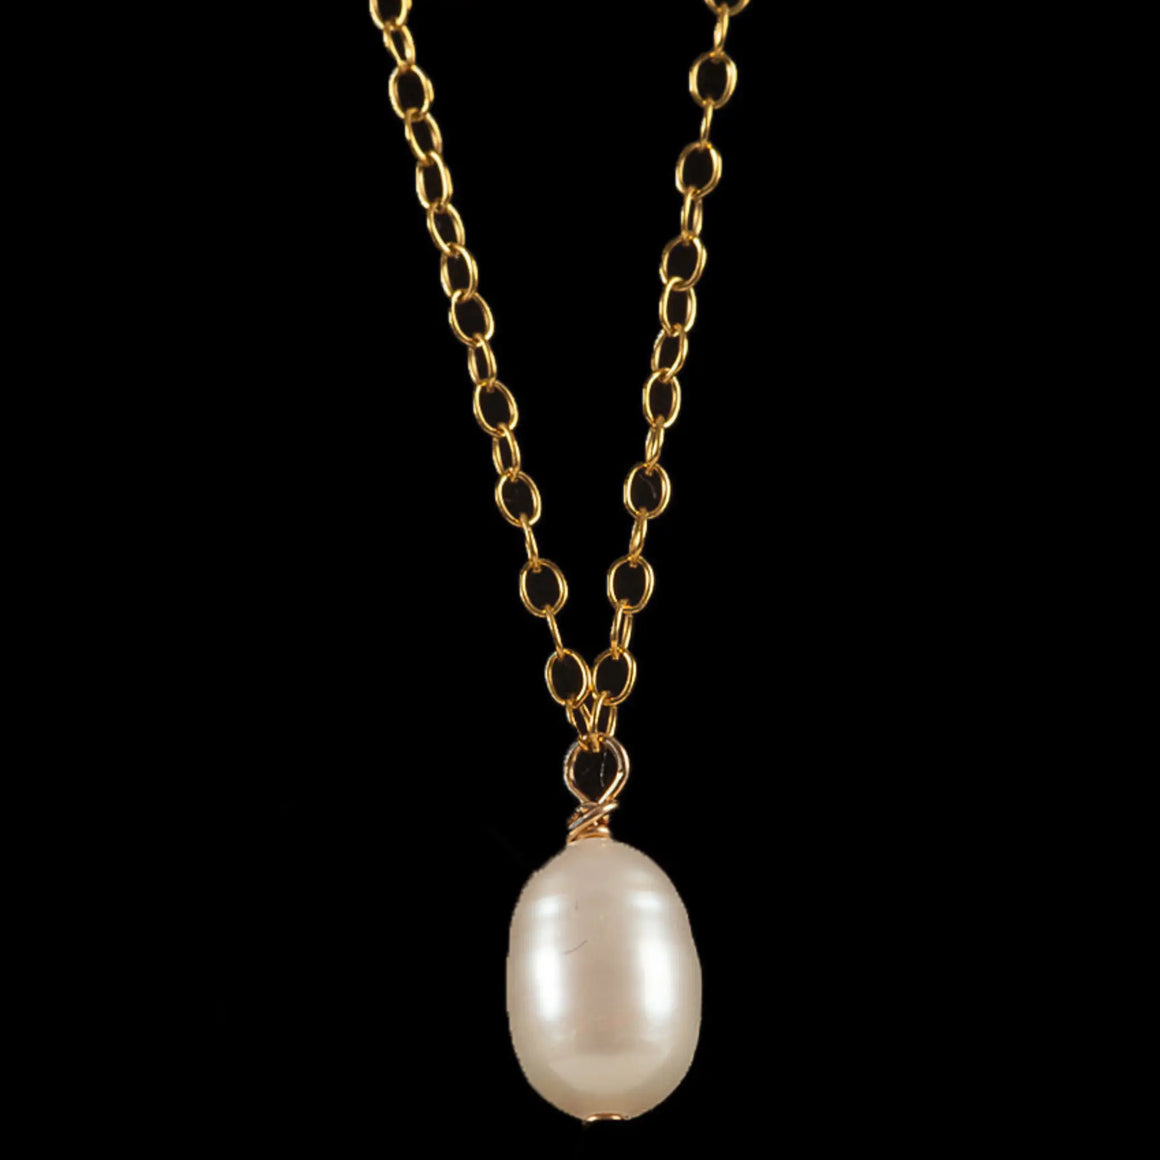 Small Pendant - White Pearl